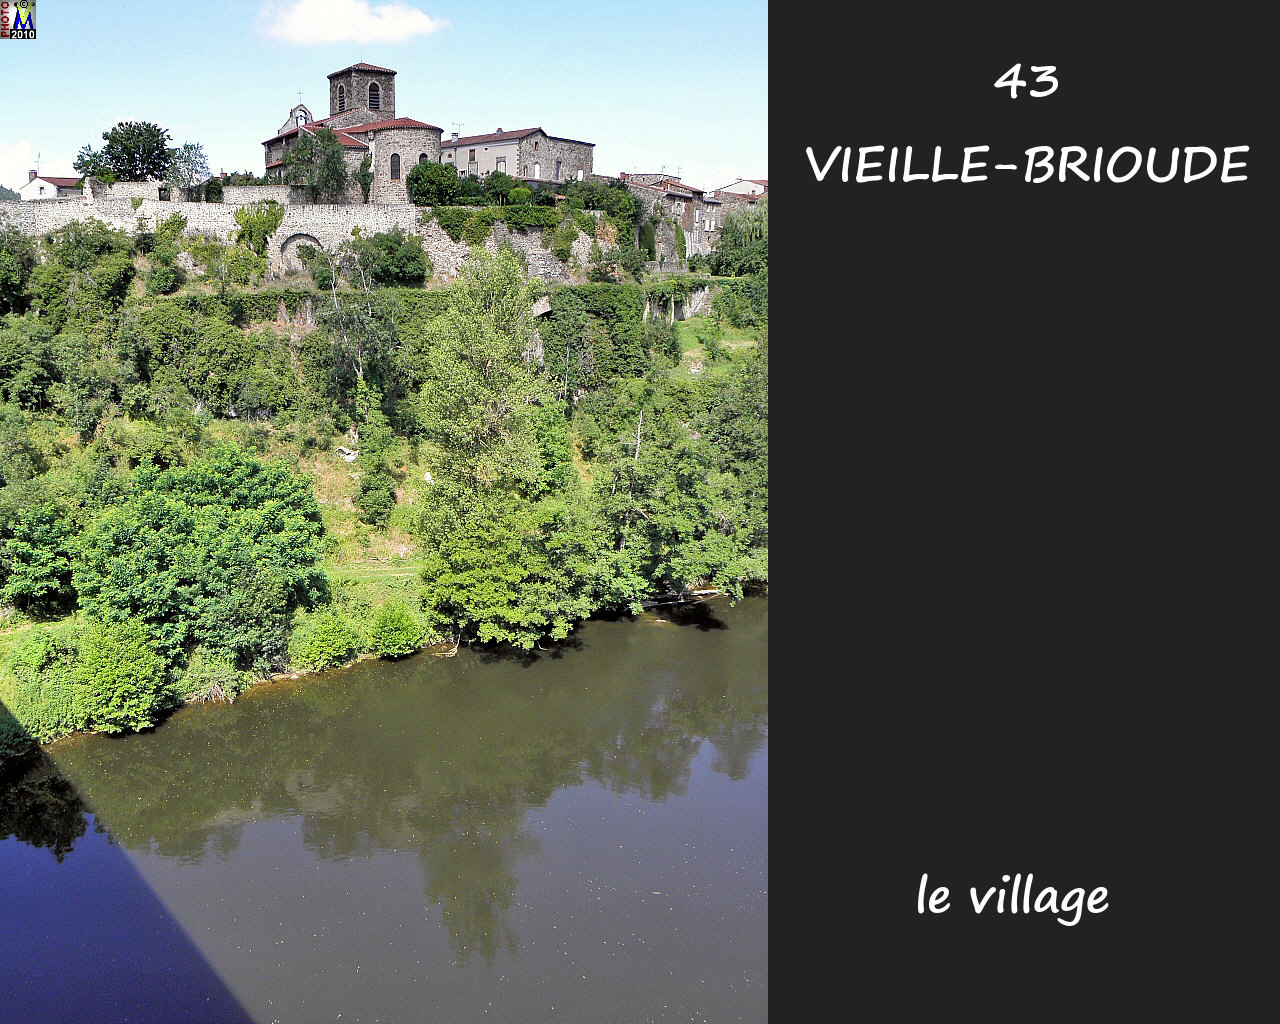 43VIEILLE-BRIOUDE_village_108.jpg